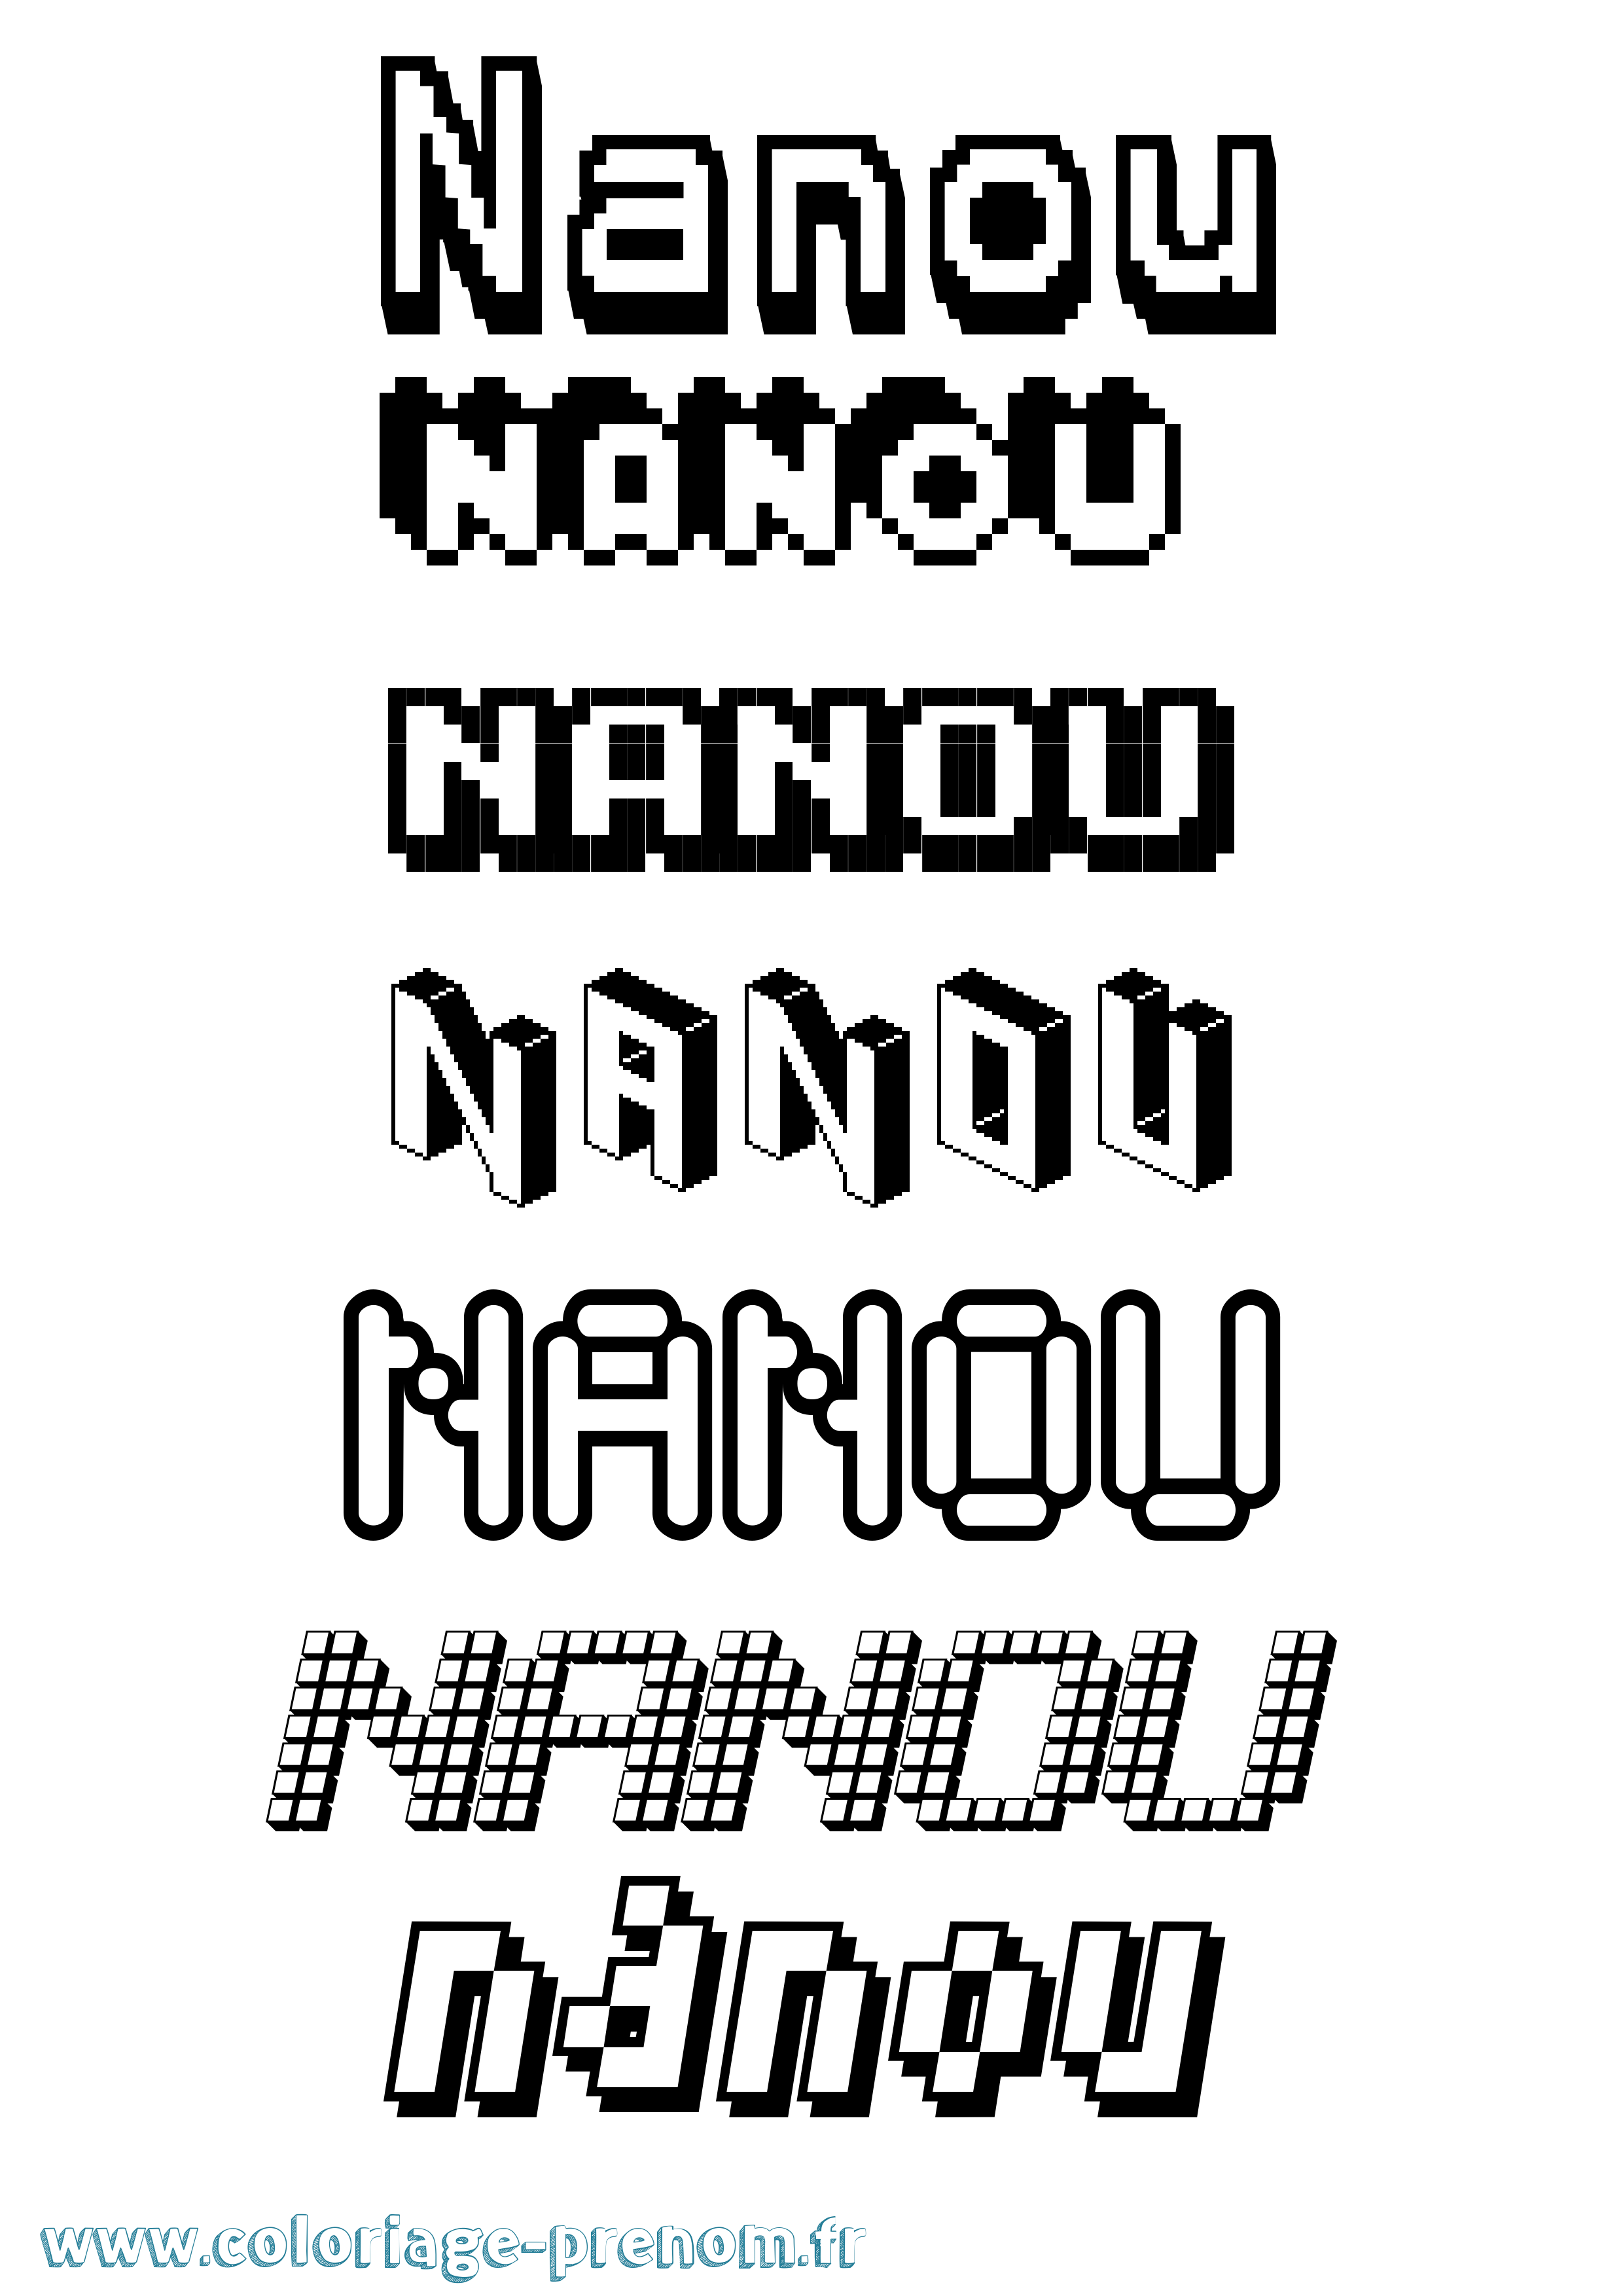 Coloriage prénom Nanou Pixel